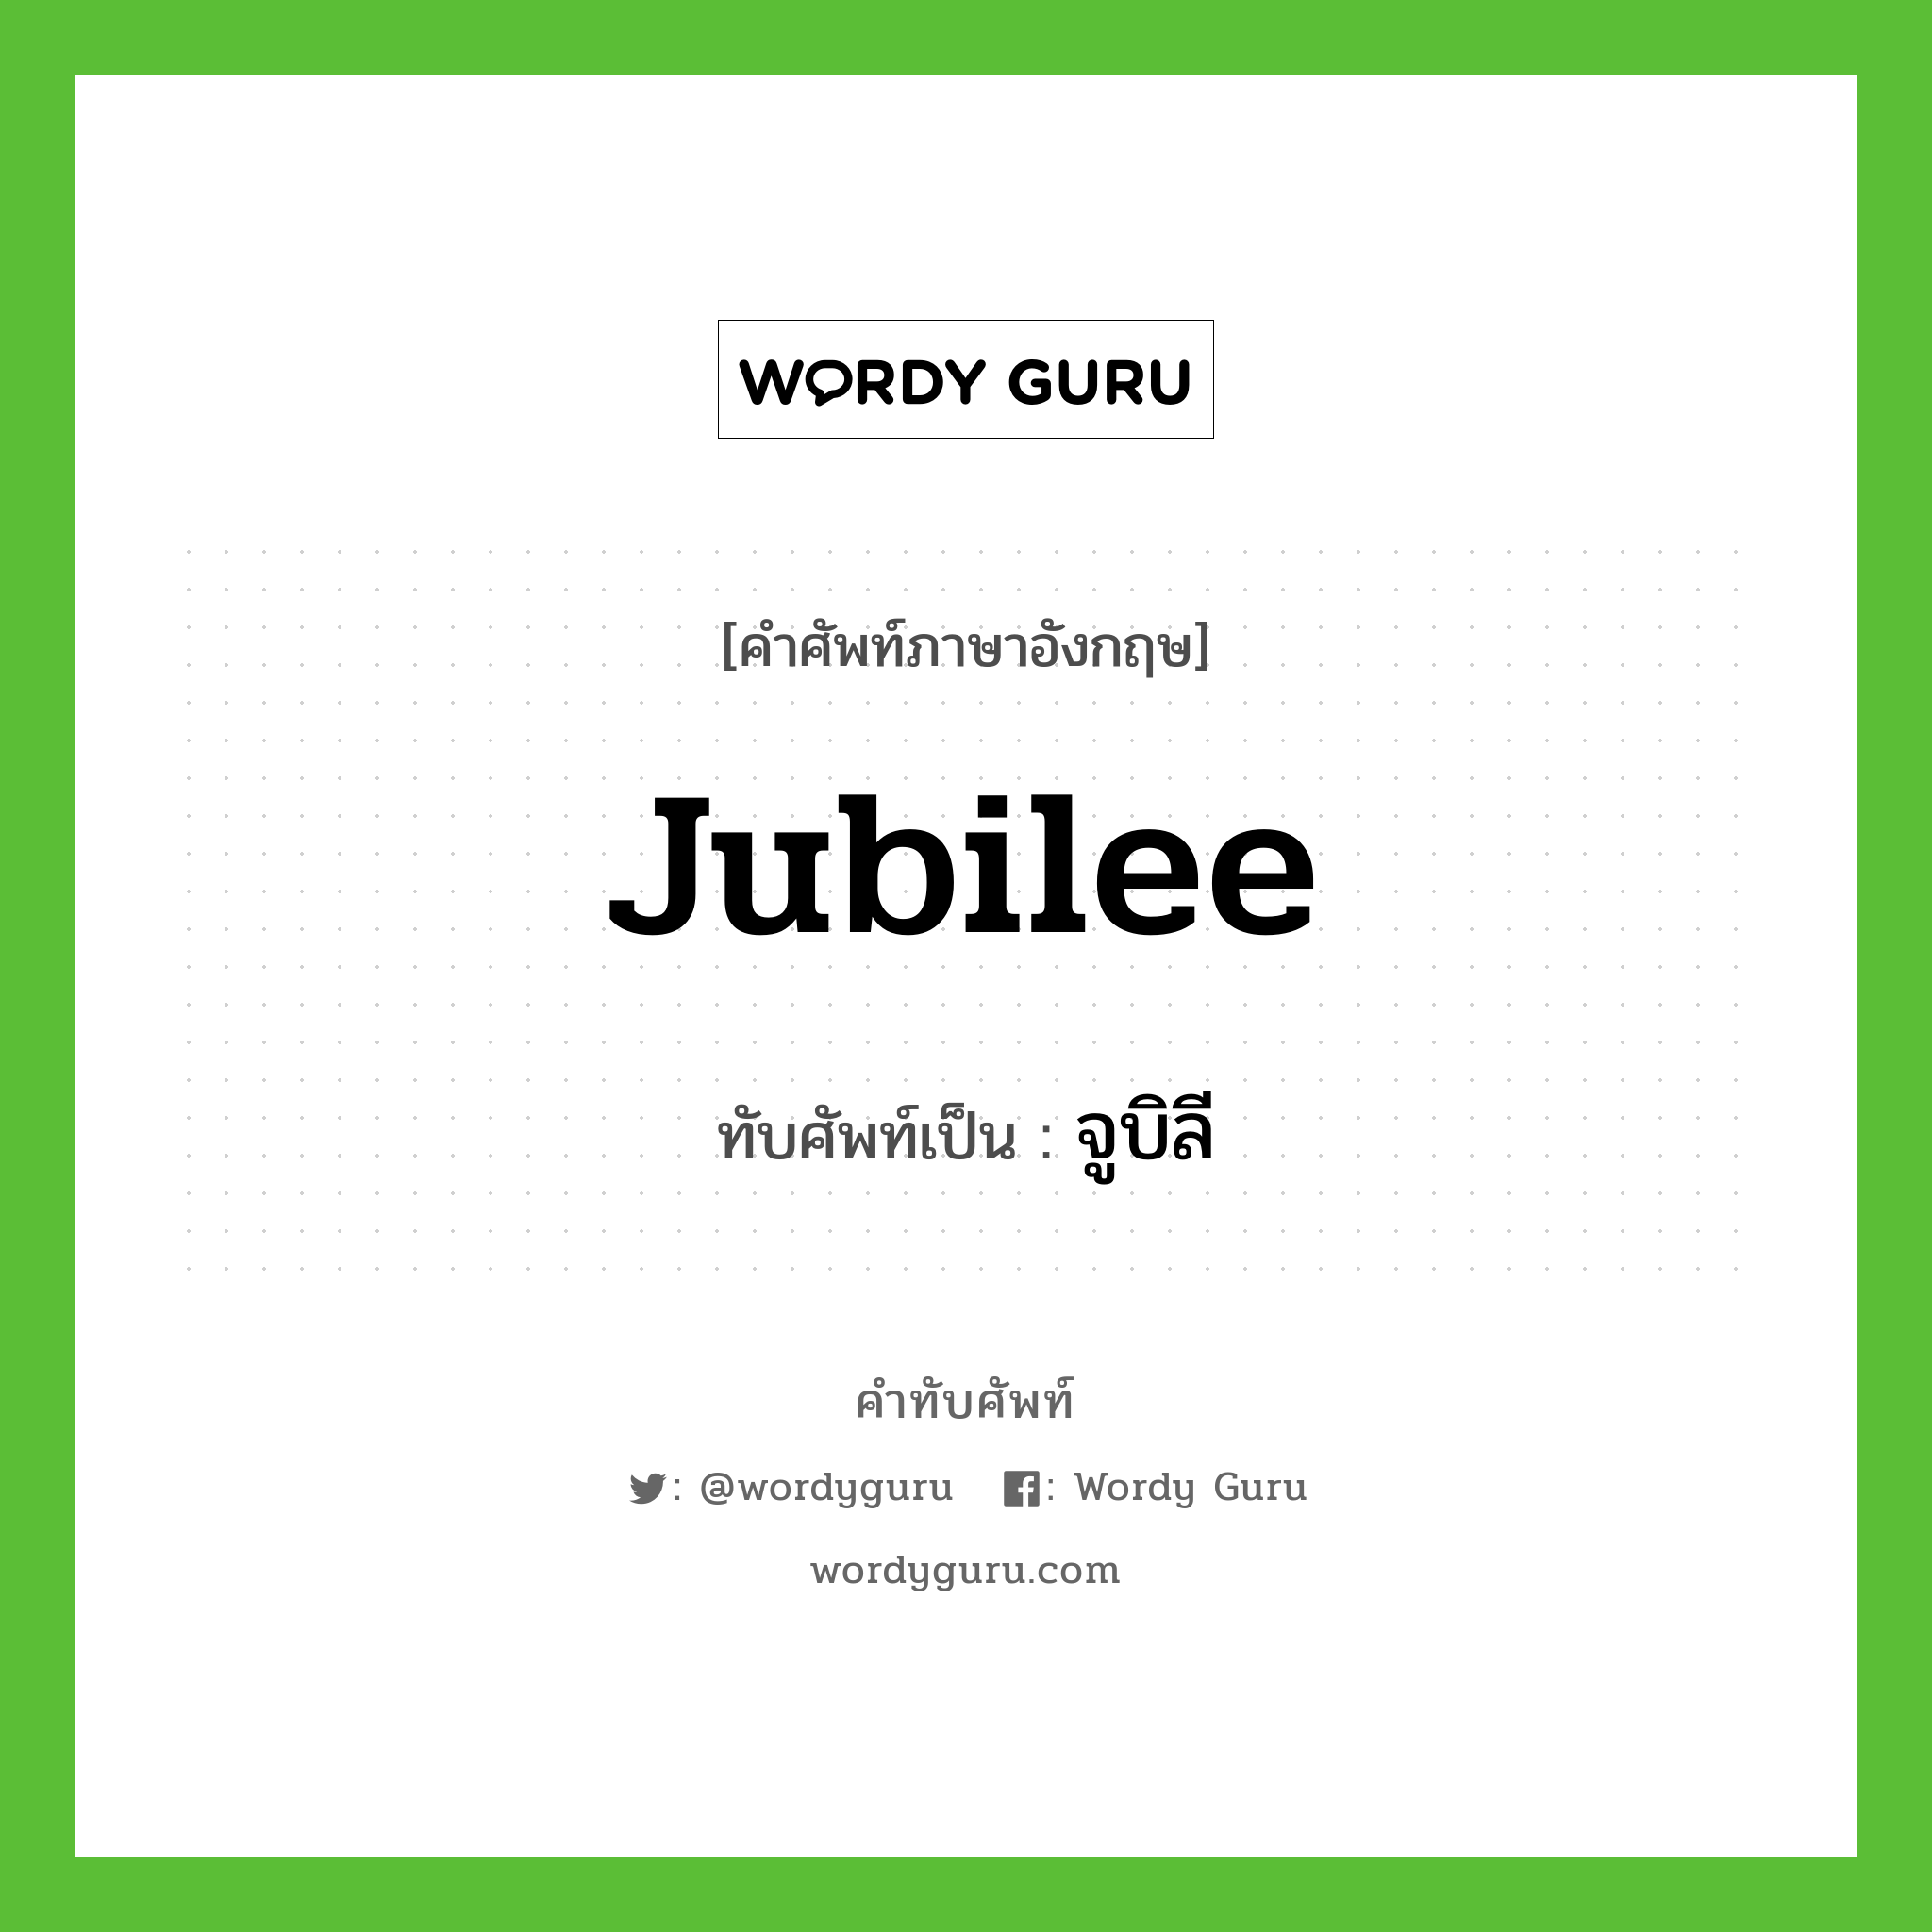 จูบิลี เขียนอย่างไร?, คำศัพท์ภาษาอังกฤษ จูบิลี ทับศัพท์เป็น jubilee